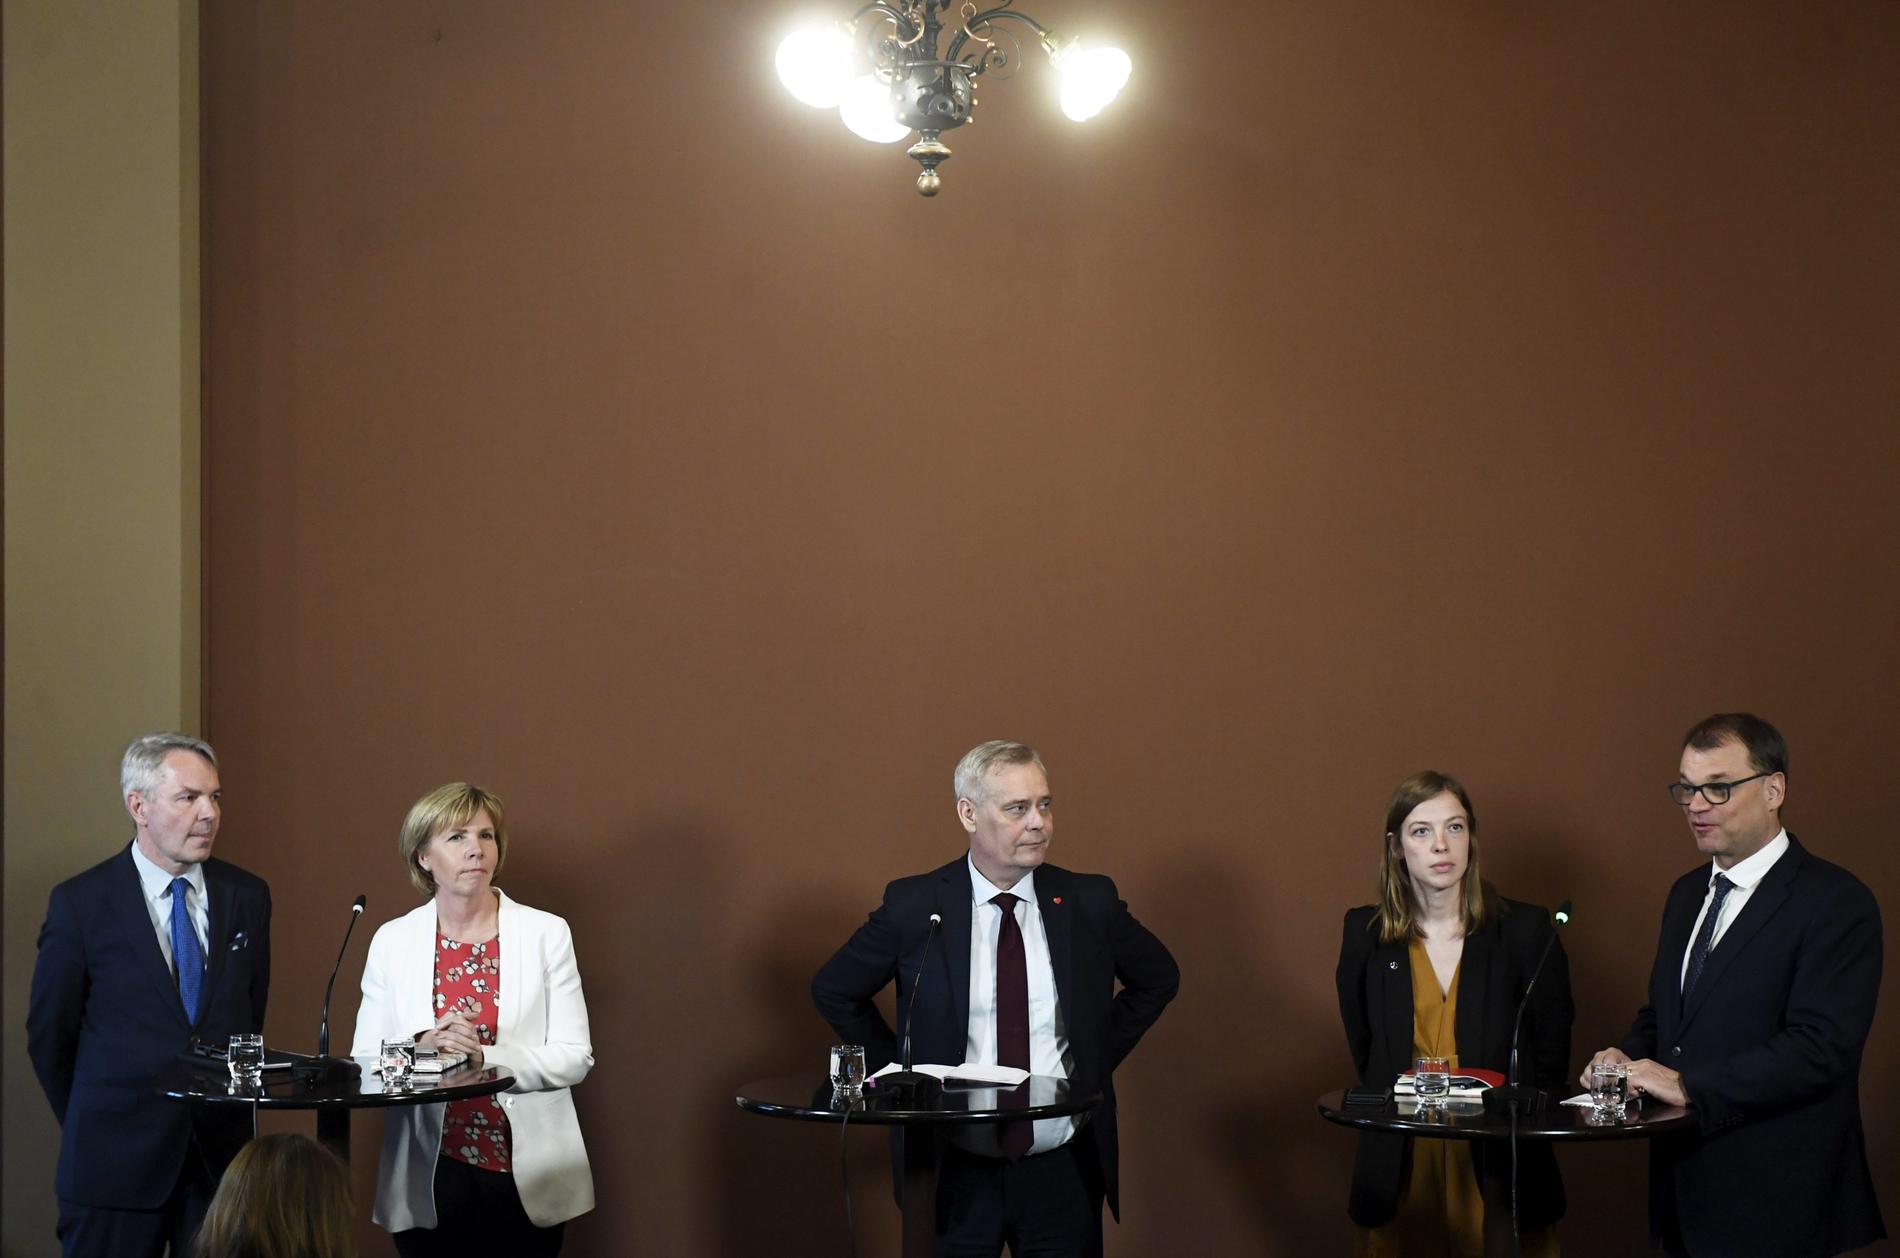 Partiledarna i Finlands regeringsförhandlingar, från vänster: Pekka Haavisto (De Gröna), Anna-Maja Henriksson (Svenska Folkpartiet), Antti Rinne (Socialdemokraterna), Li Andersson (Vänsterförbundet) och Juha Sipilä (Centern). Bilden är tagen den 8 maj.